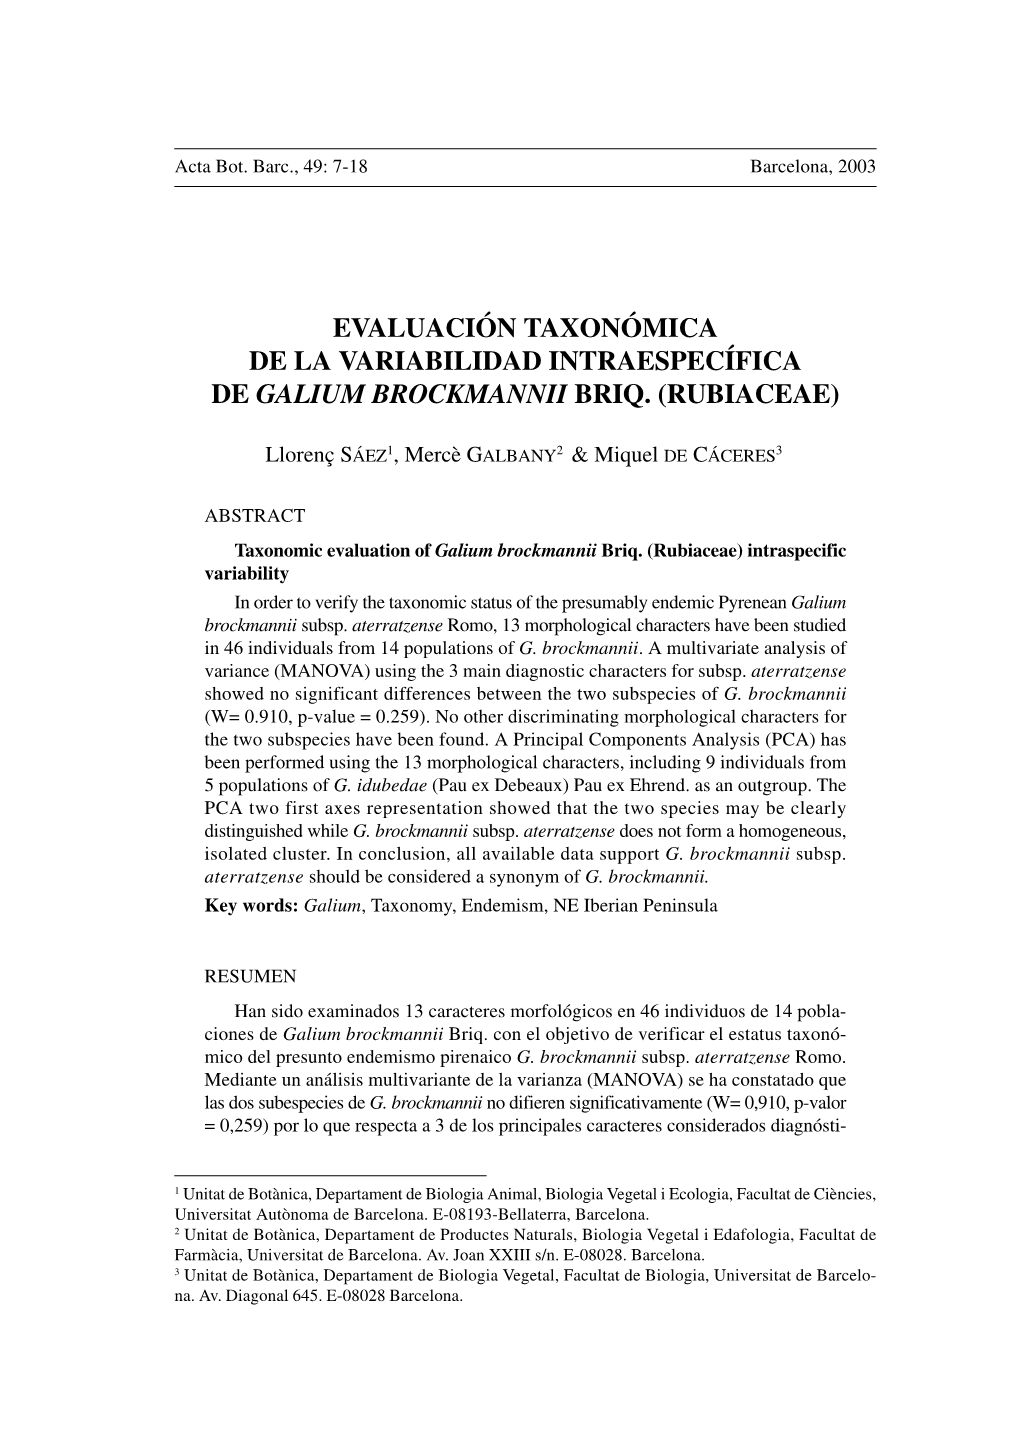 Evaluación Taxonómica De La Variabilidad Intraespecífica De Galium Brockmannii Briq. (Rubiaceae)